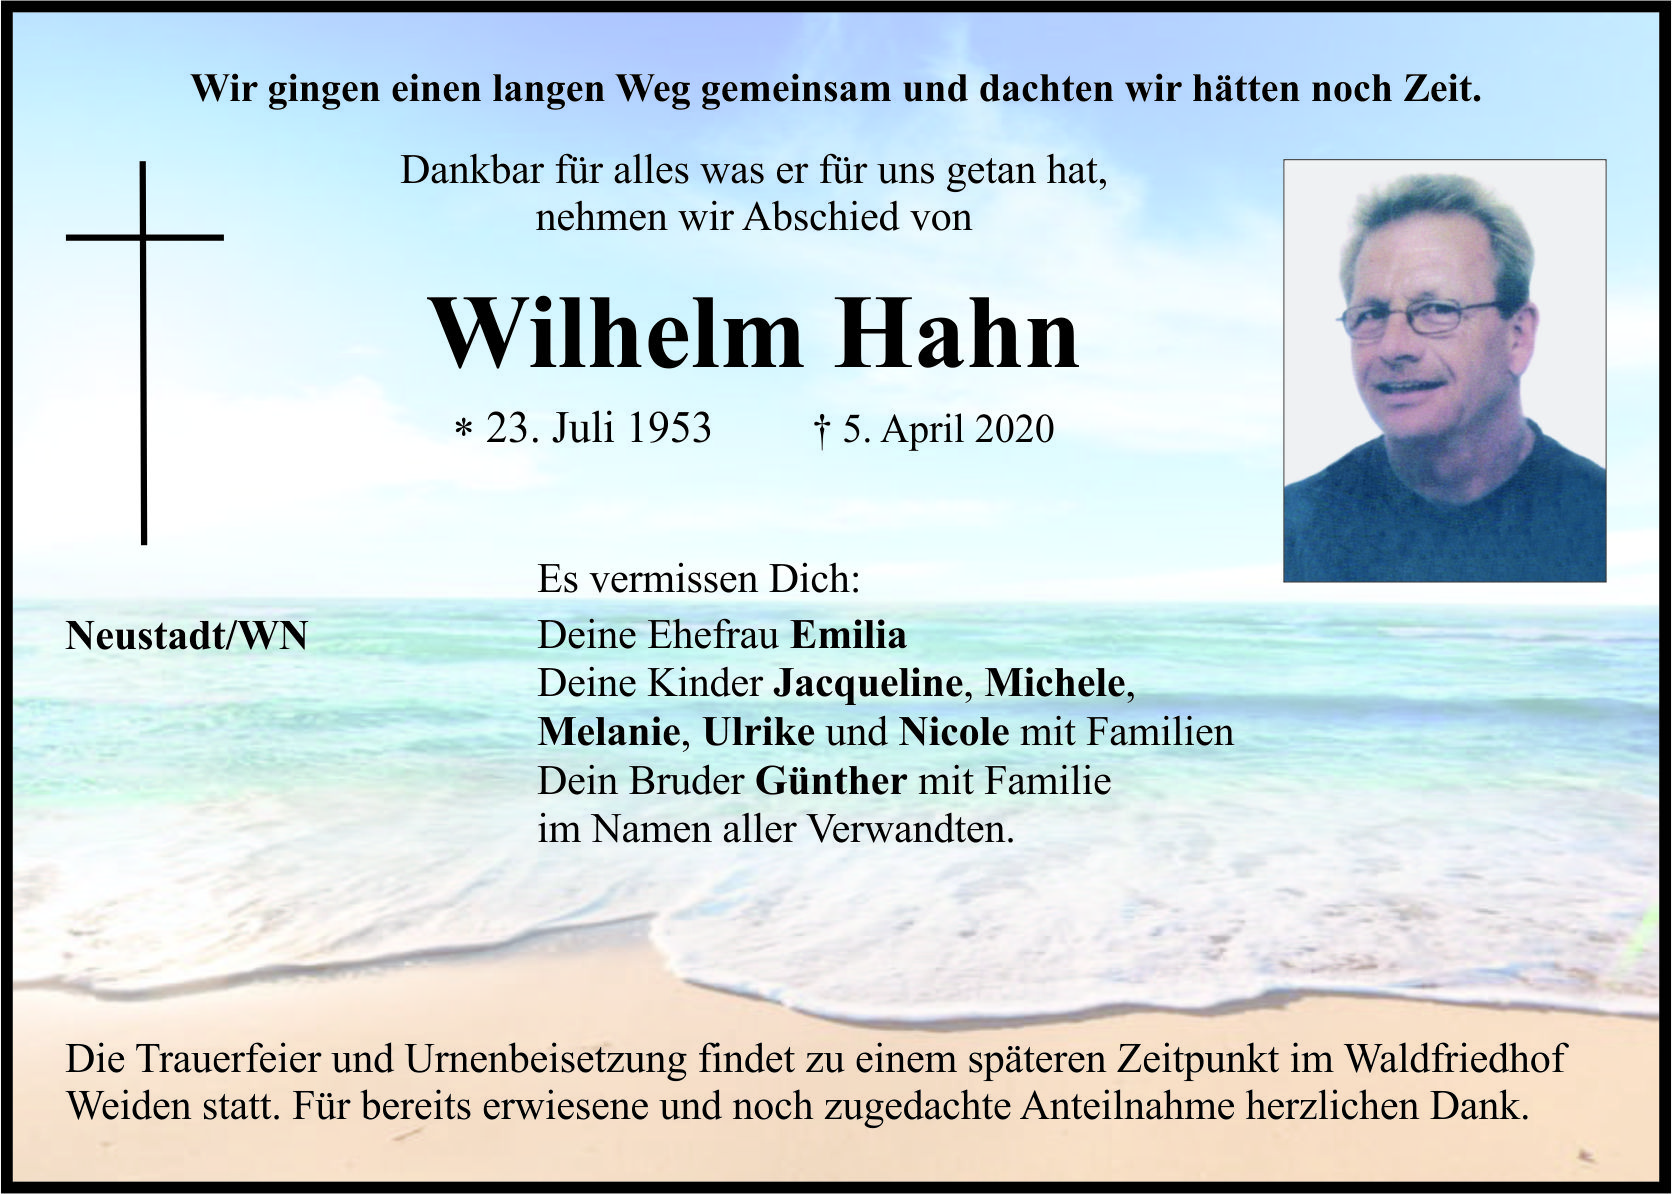 Traueranzeige Wilhelm Hahn